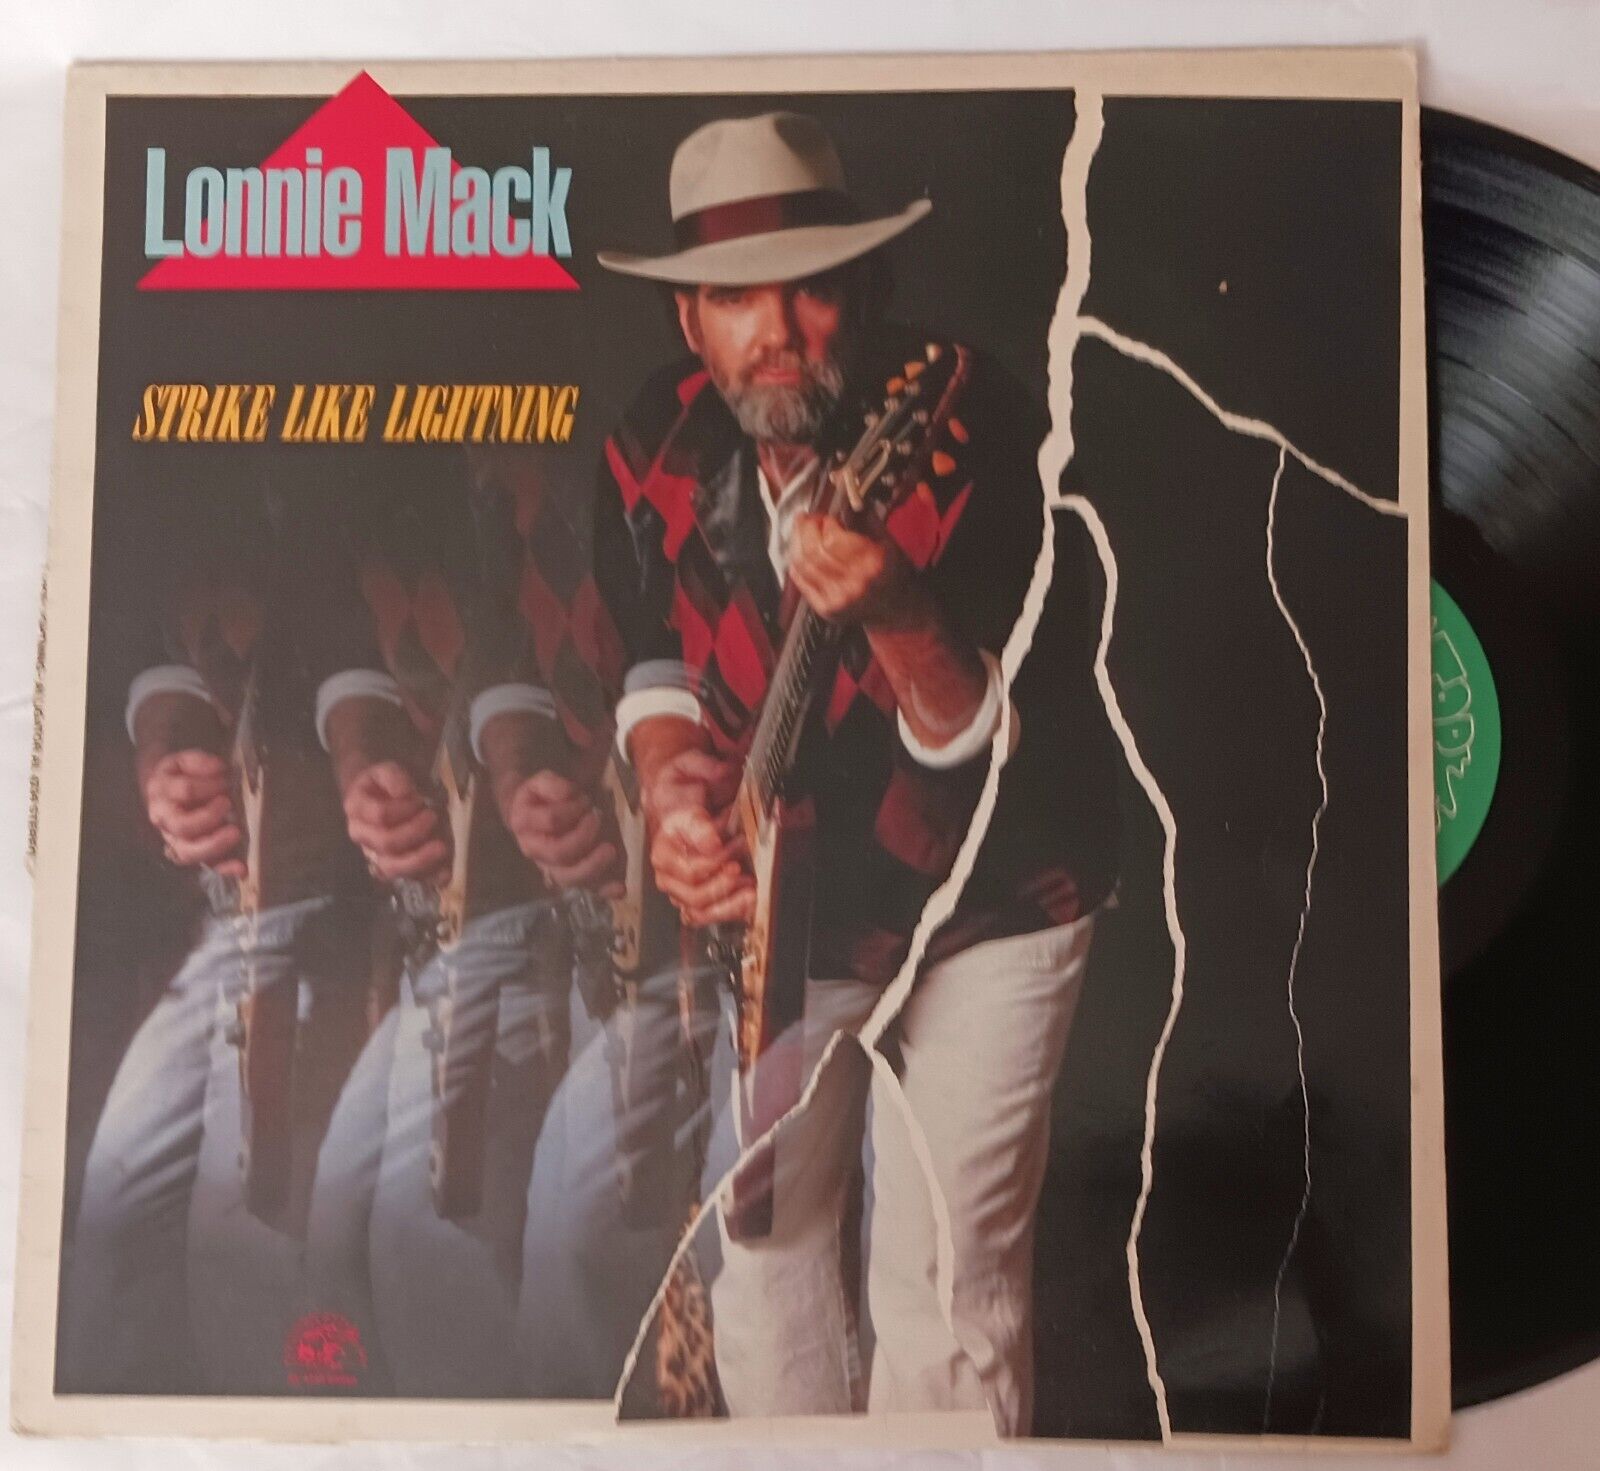 Lonnie Mack Vinyl LP Strike Like Lighting Steve Ray Vaughn